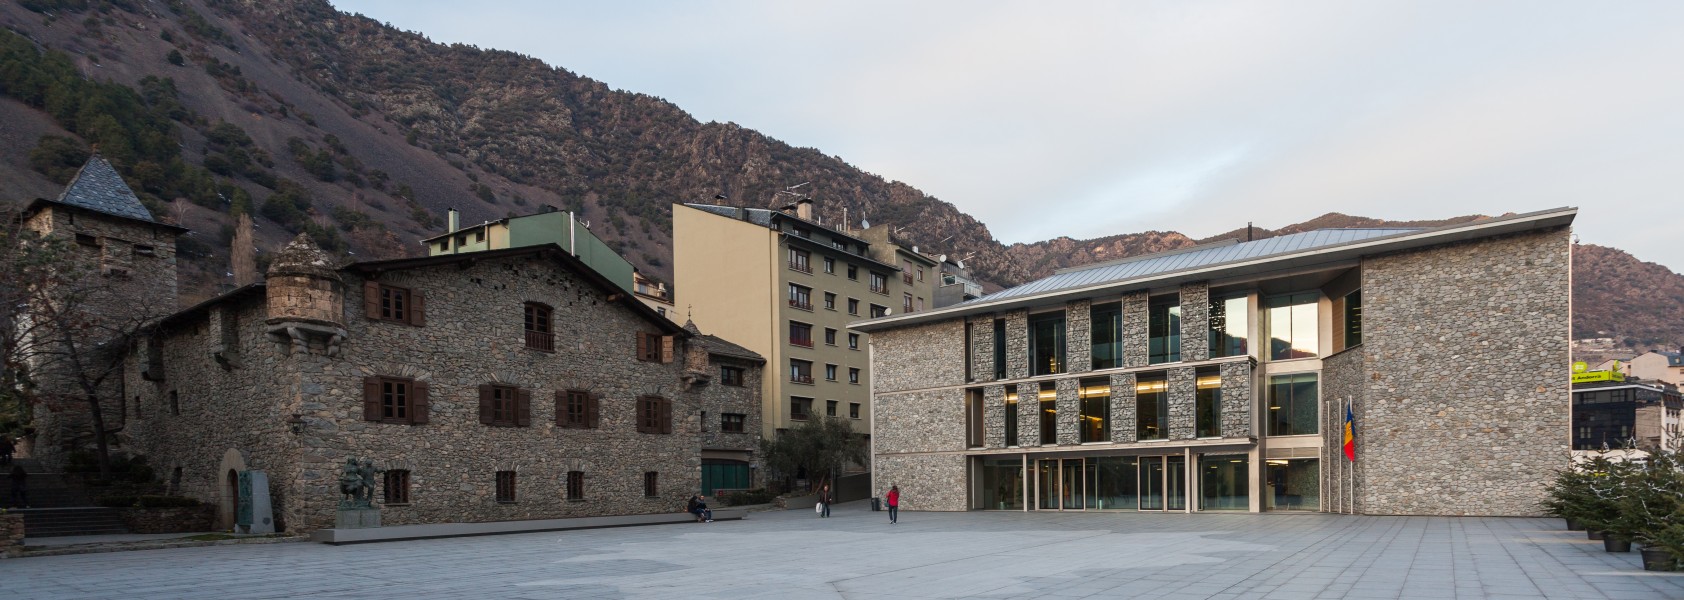 Casa de la Vall, Andorra la Vieja, Andorra, 2013-12-30, DD 03